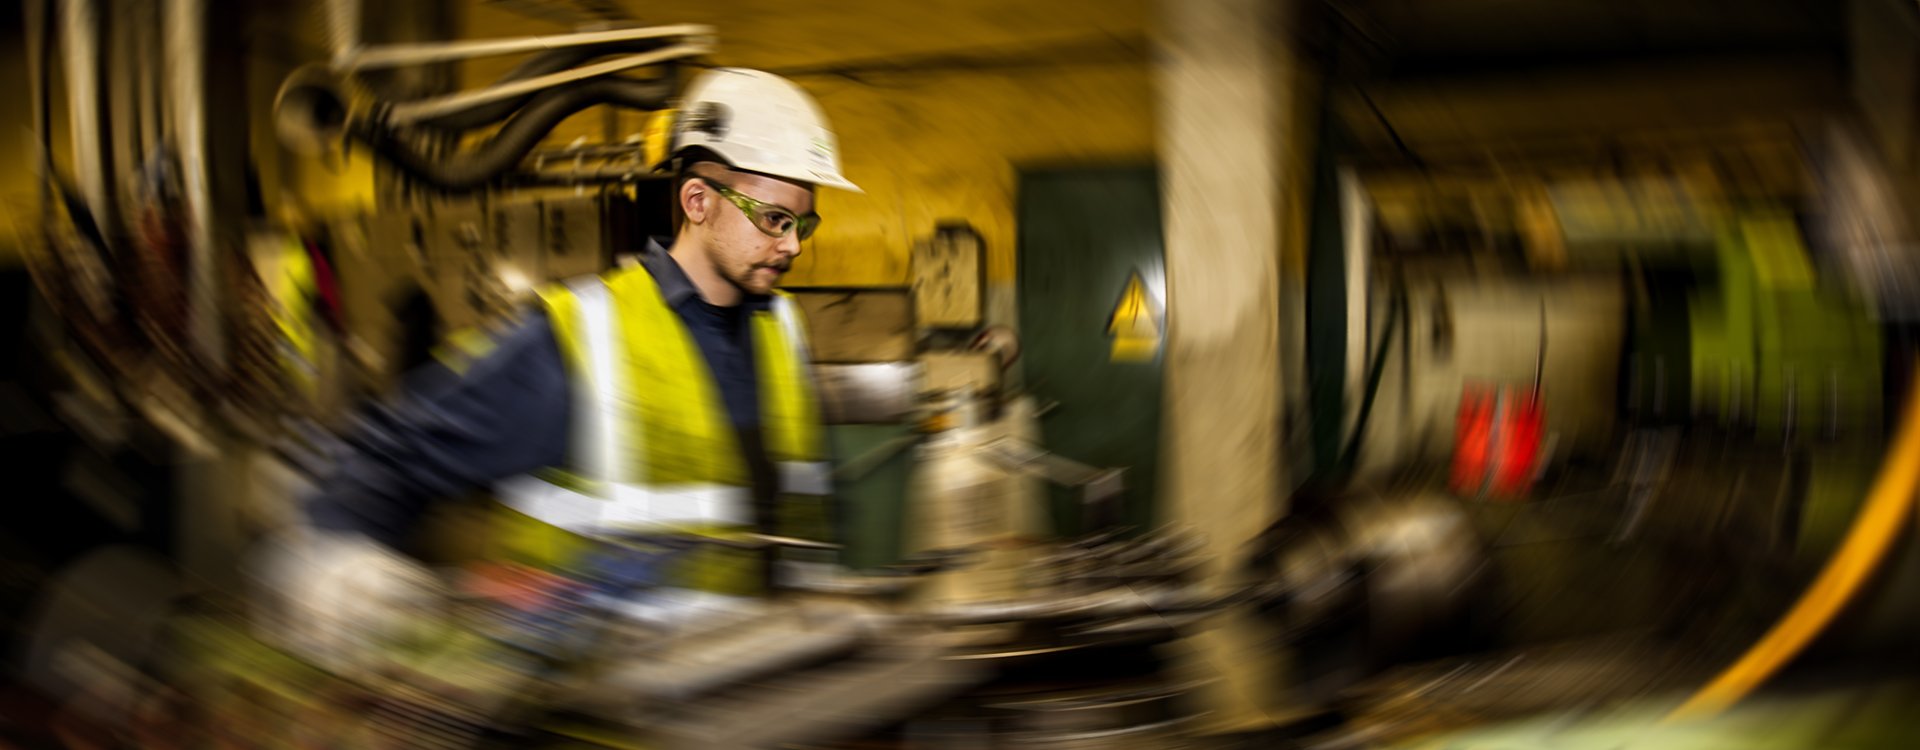 Ung mandlig maskinarbejder på virksomheden Nordic Sukkermed hjelm i uskarpe omgivelser